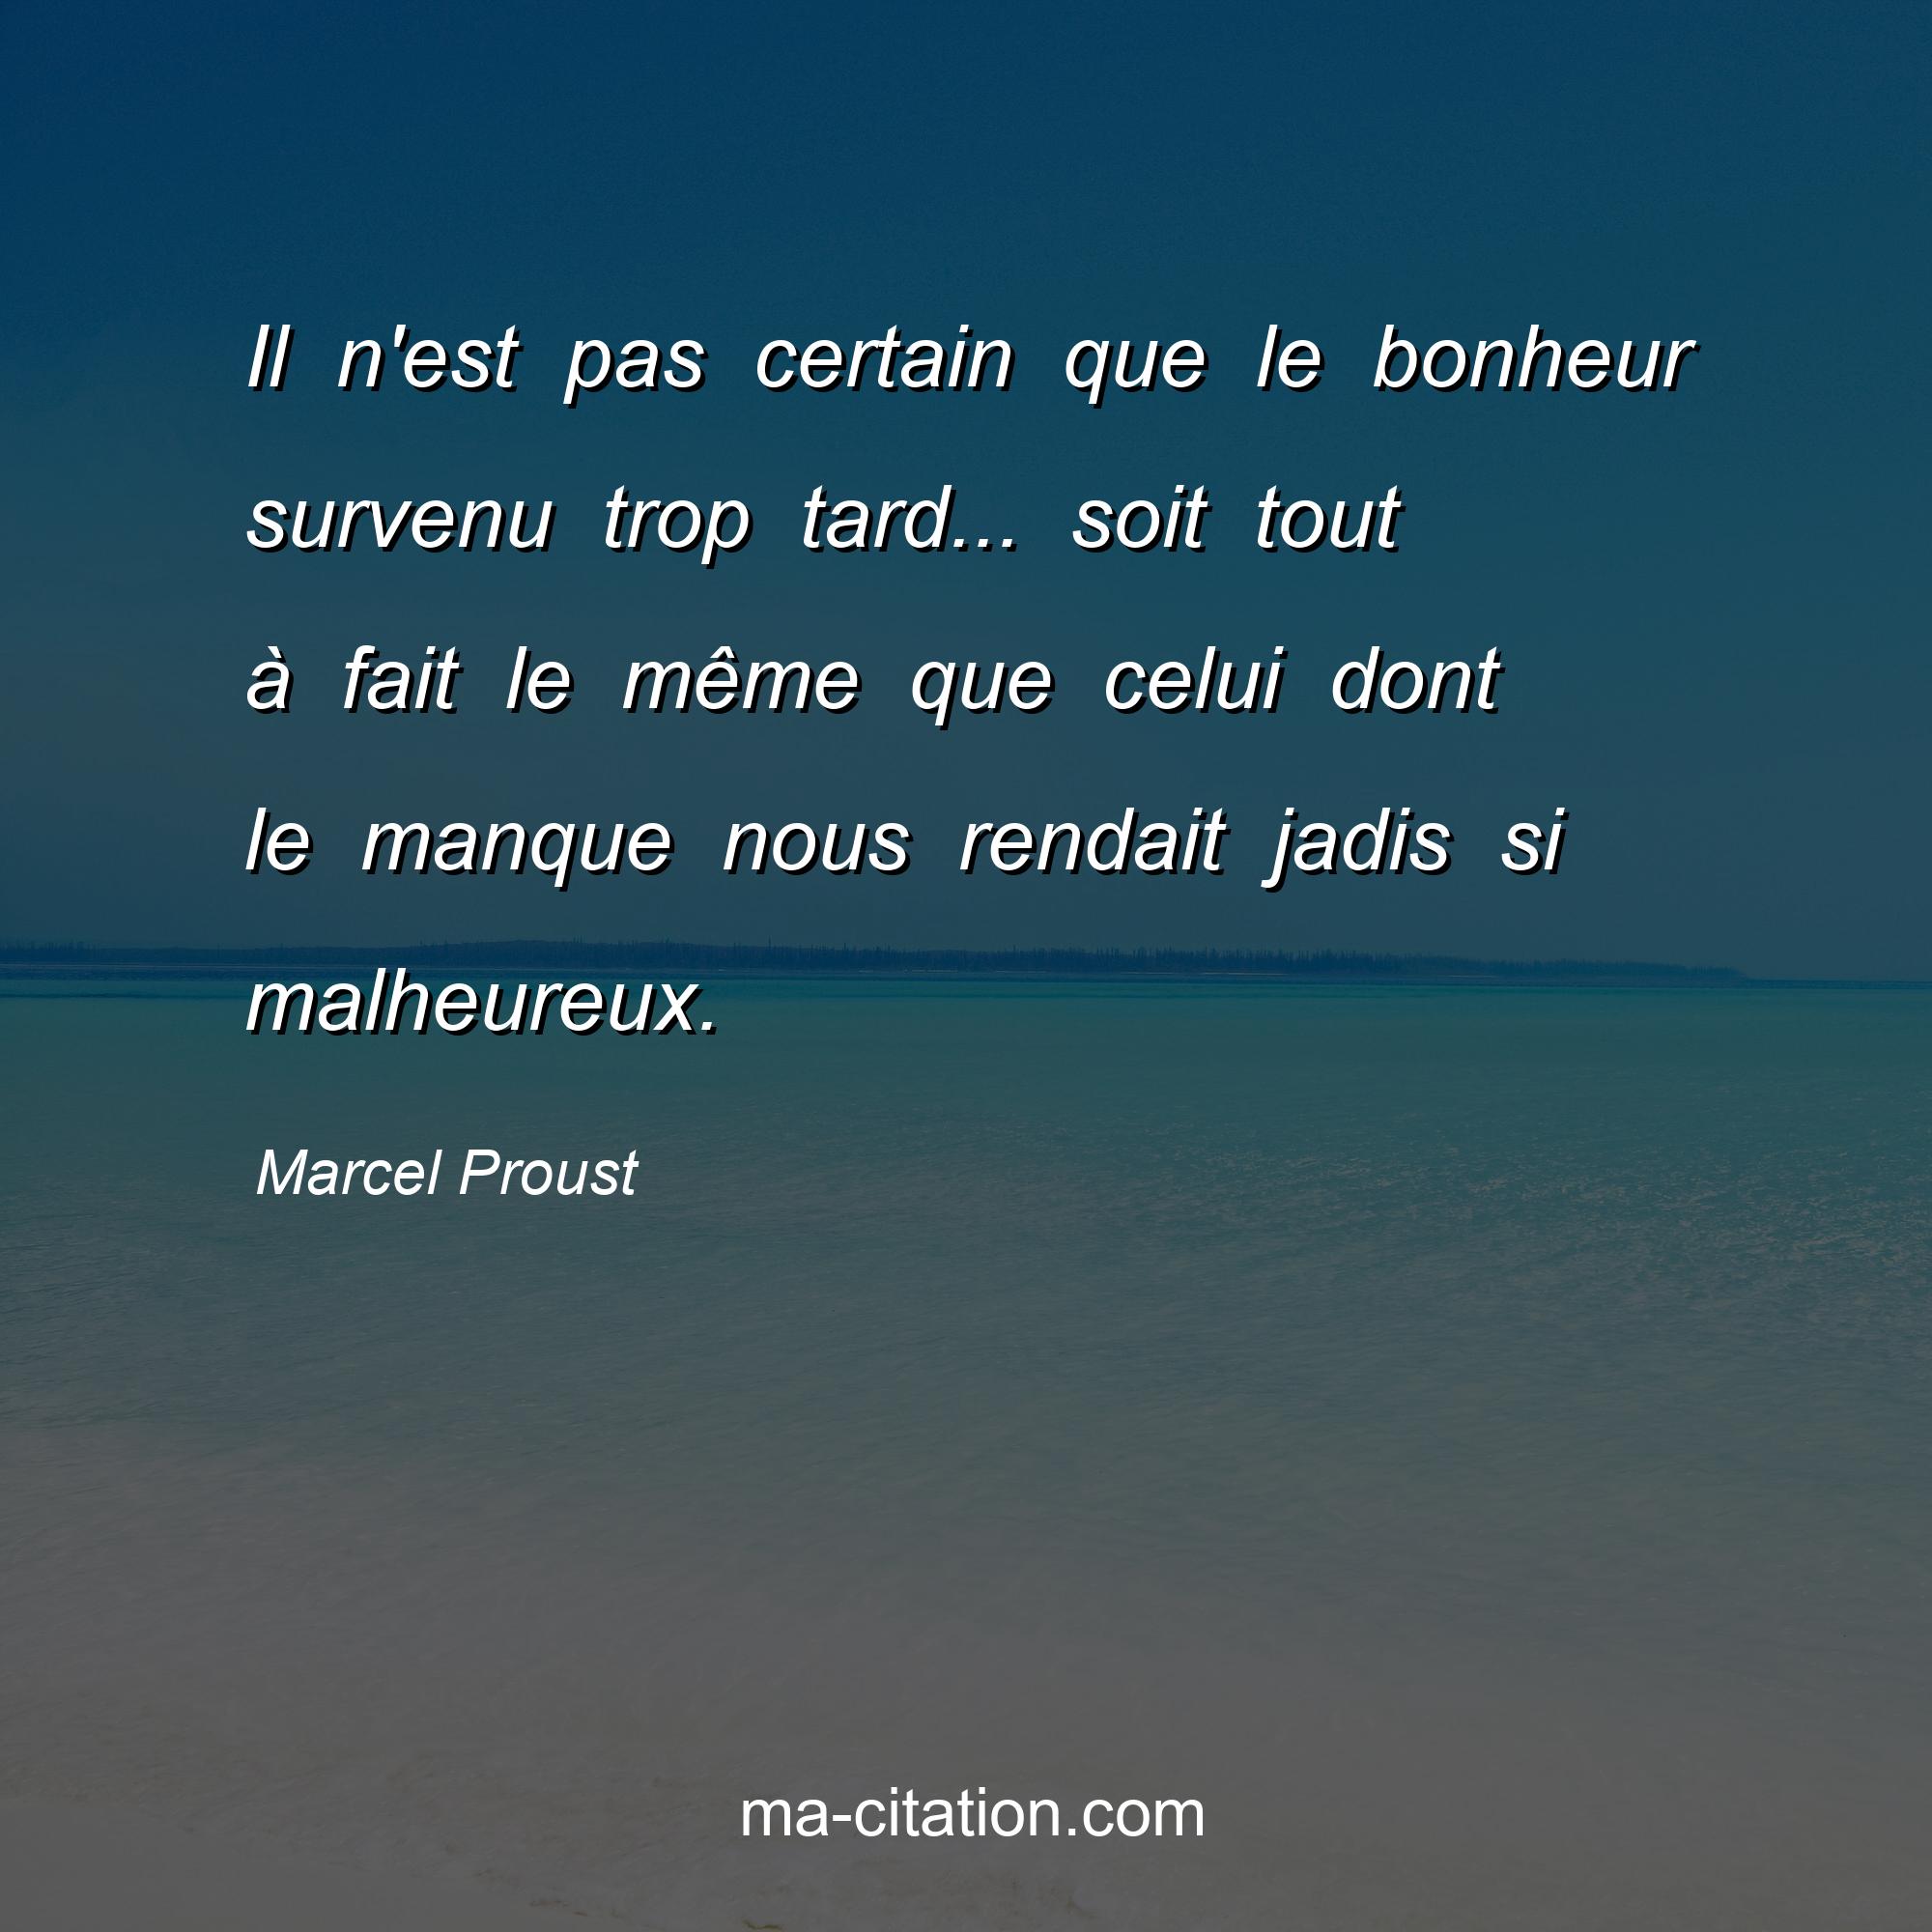 Marcel Proust : Il n'est pas certain que le bonheur survenu trop tard... soit tout à fait le même que celui dont le manque nous rendait jadis si malheureux.